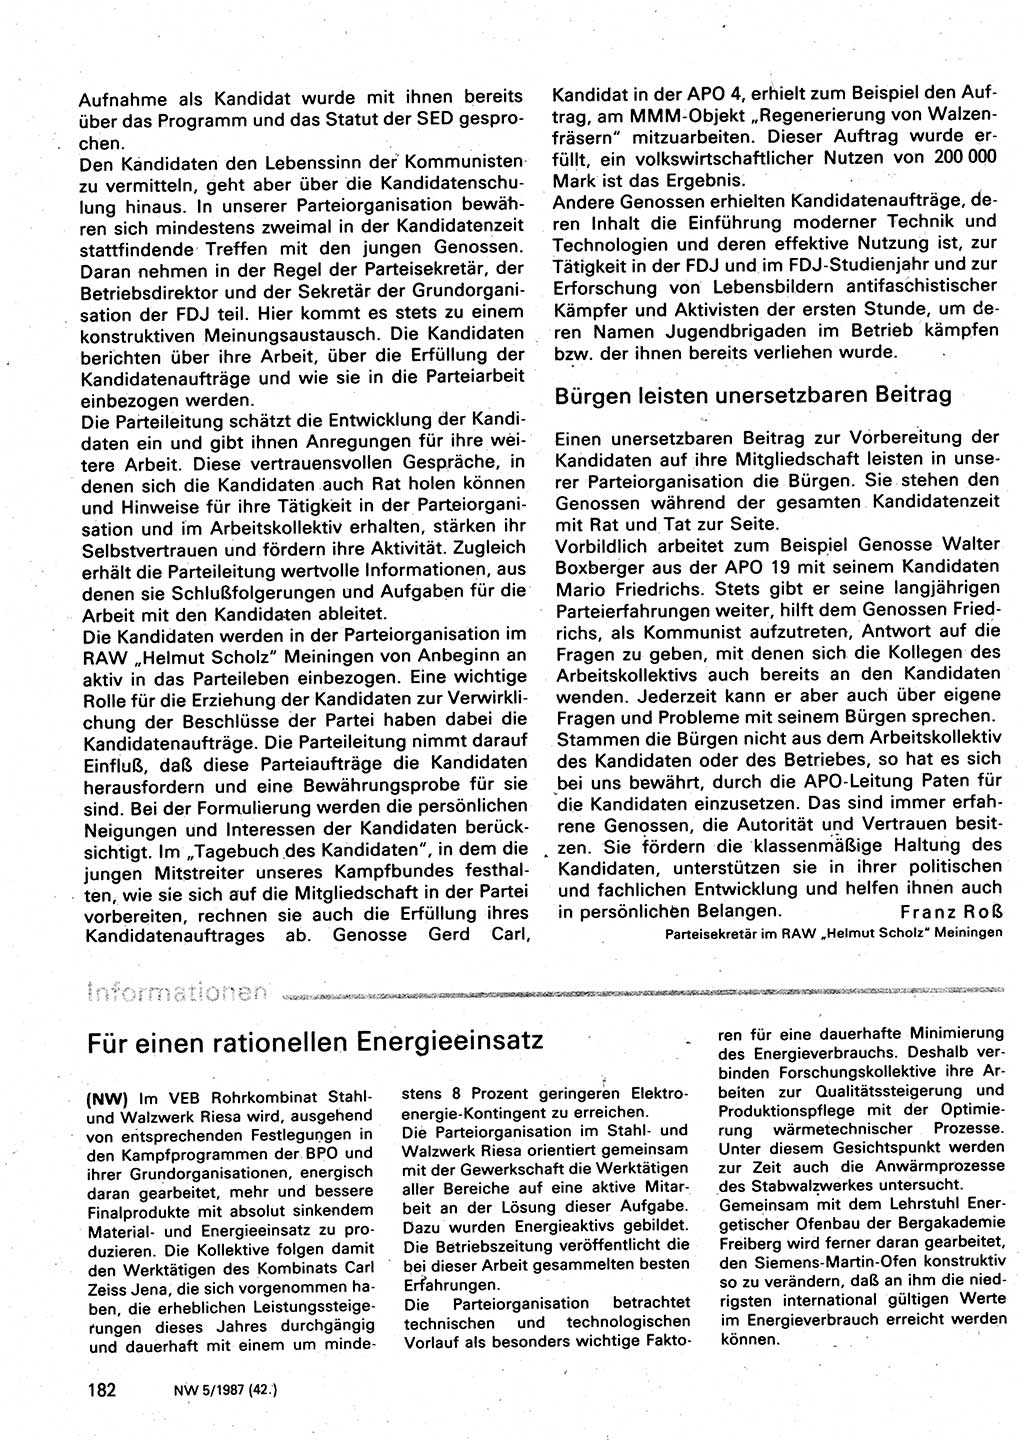 Neuer Weg (NW), Organ des Zentralkomitees (ZK) der SED (Sozialistische Einheitspartei Deutschlands) für Fragen des Parteilebens, 42. Jahrgang [Deutsche Demokratische Republik (DDR)] 1987, Seite 182 (NW ZK SED DDR 1987, S. 182)